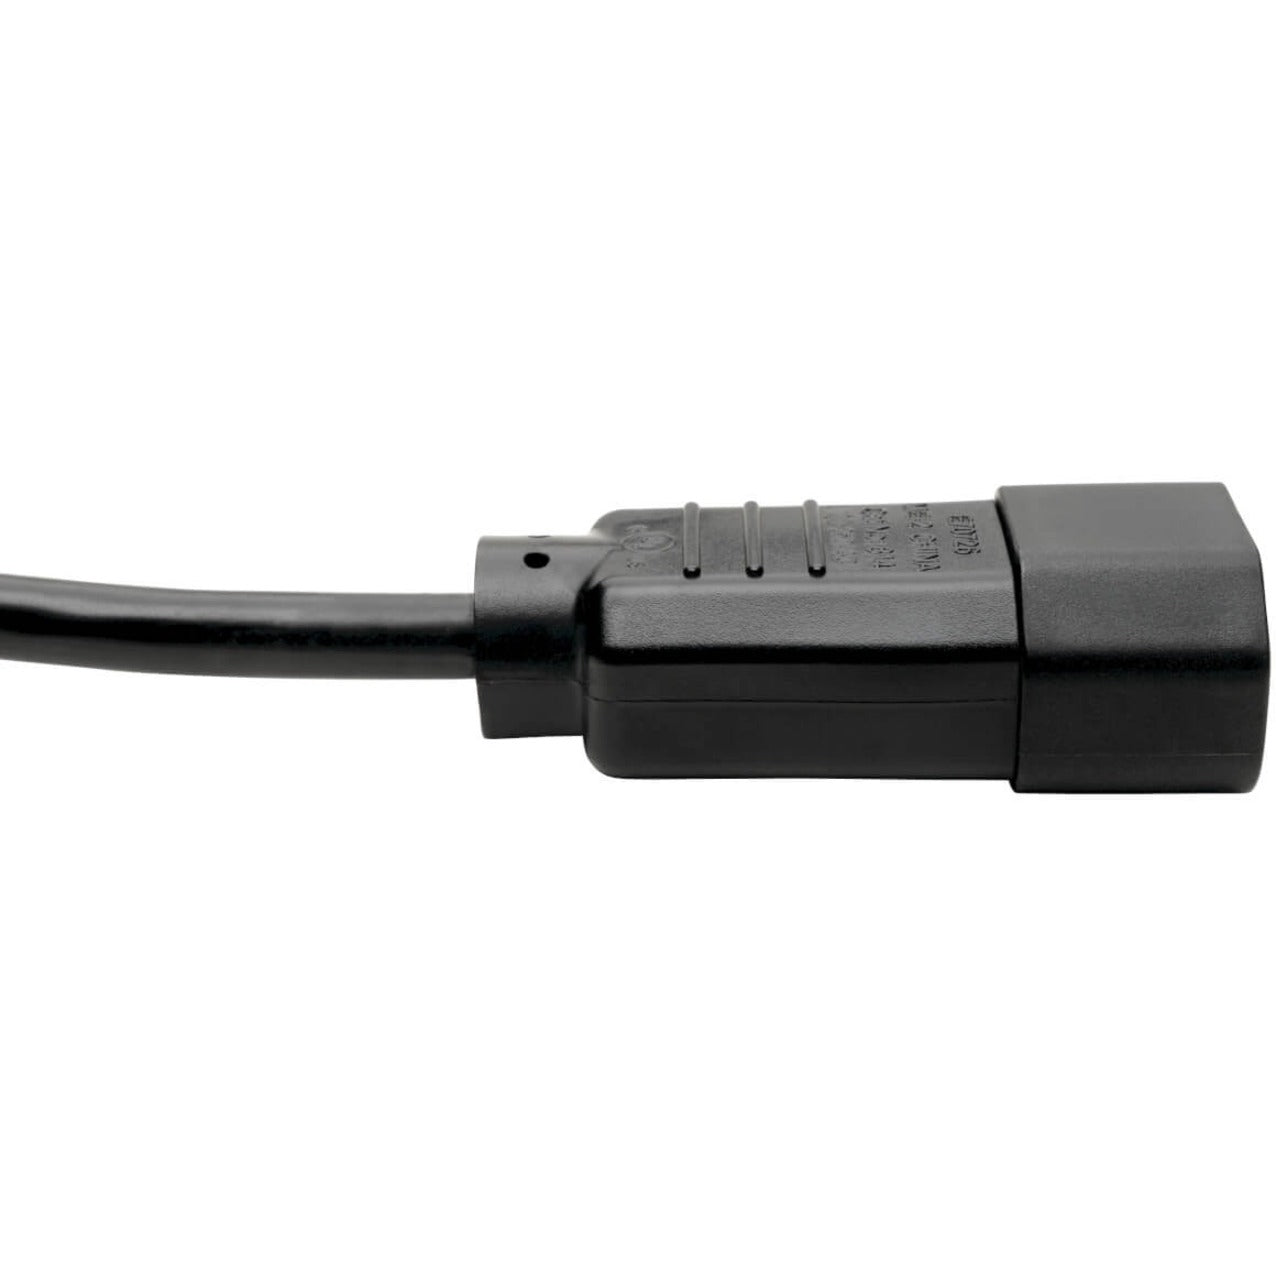 Tripp Lite P004-006-2C13 Splitter Kabel 6 ft 10A 110V AC/220V AC